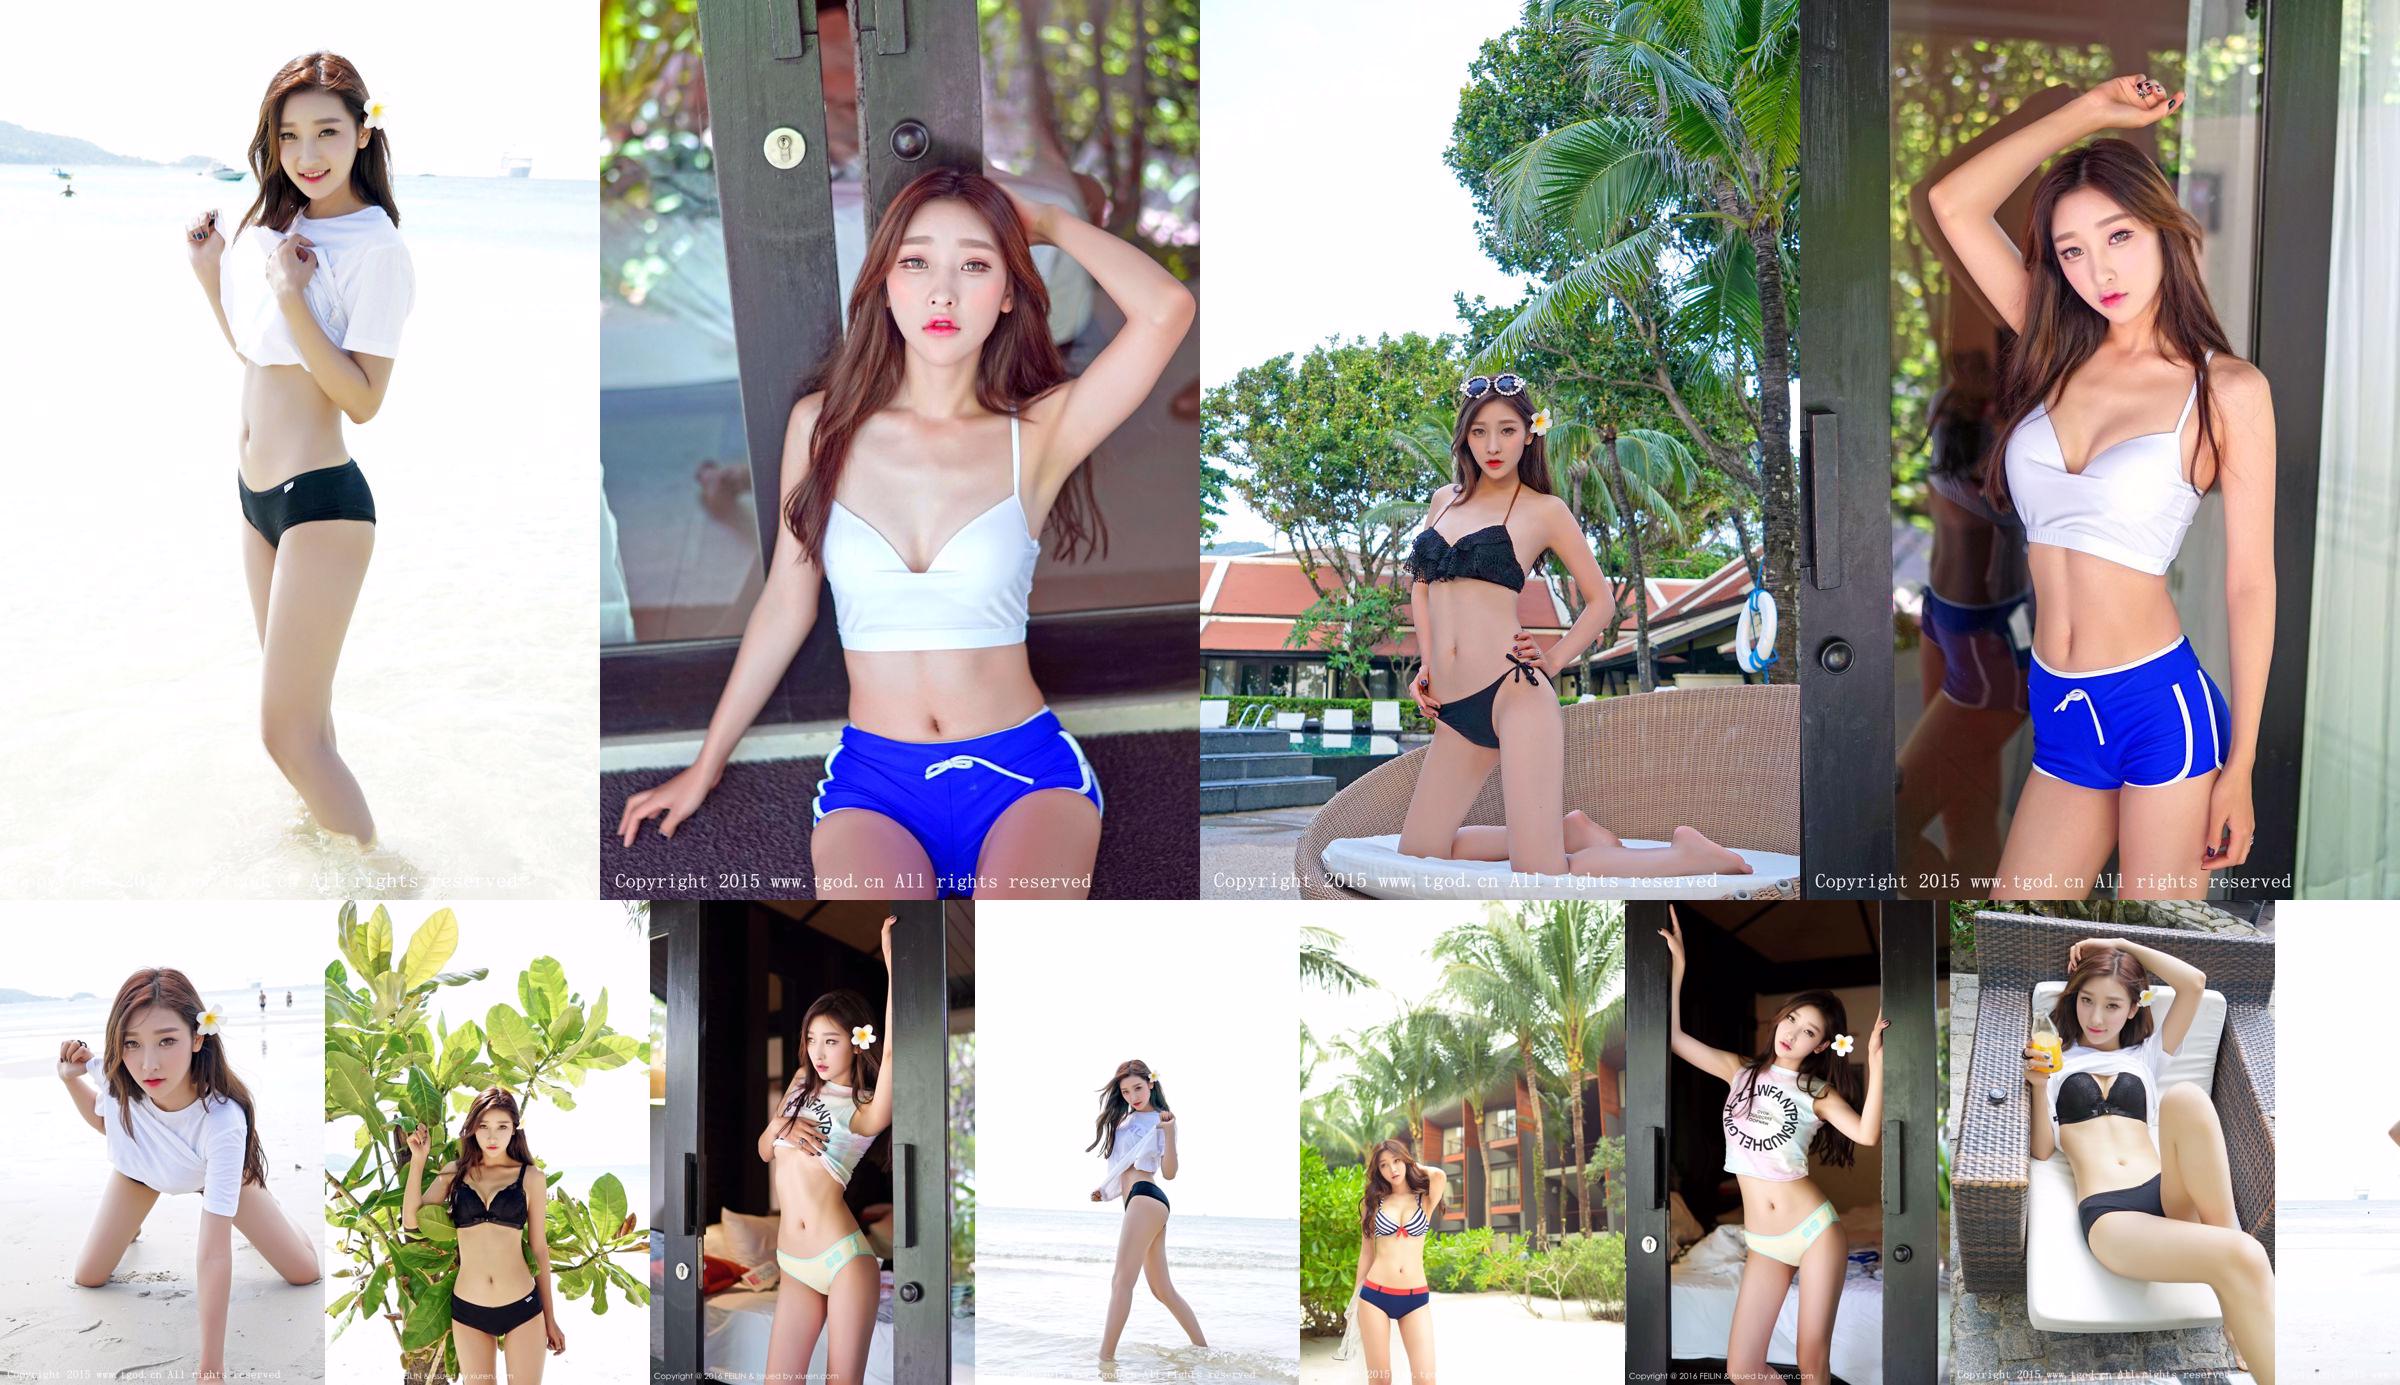 Li Xiaoqiao JoJo Loạt ảnh thẩm mỹ bên bờ biển "Phuket Travel Shooting" [Nữ thần đẩy TGOD] No.dff00b Trang 1